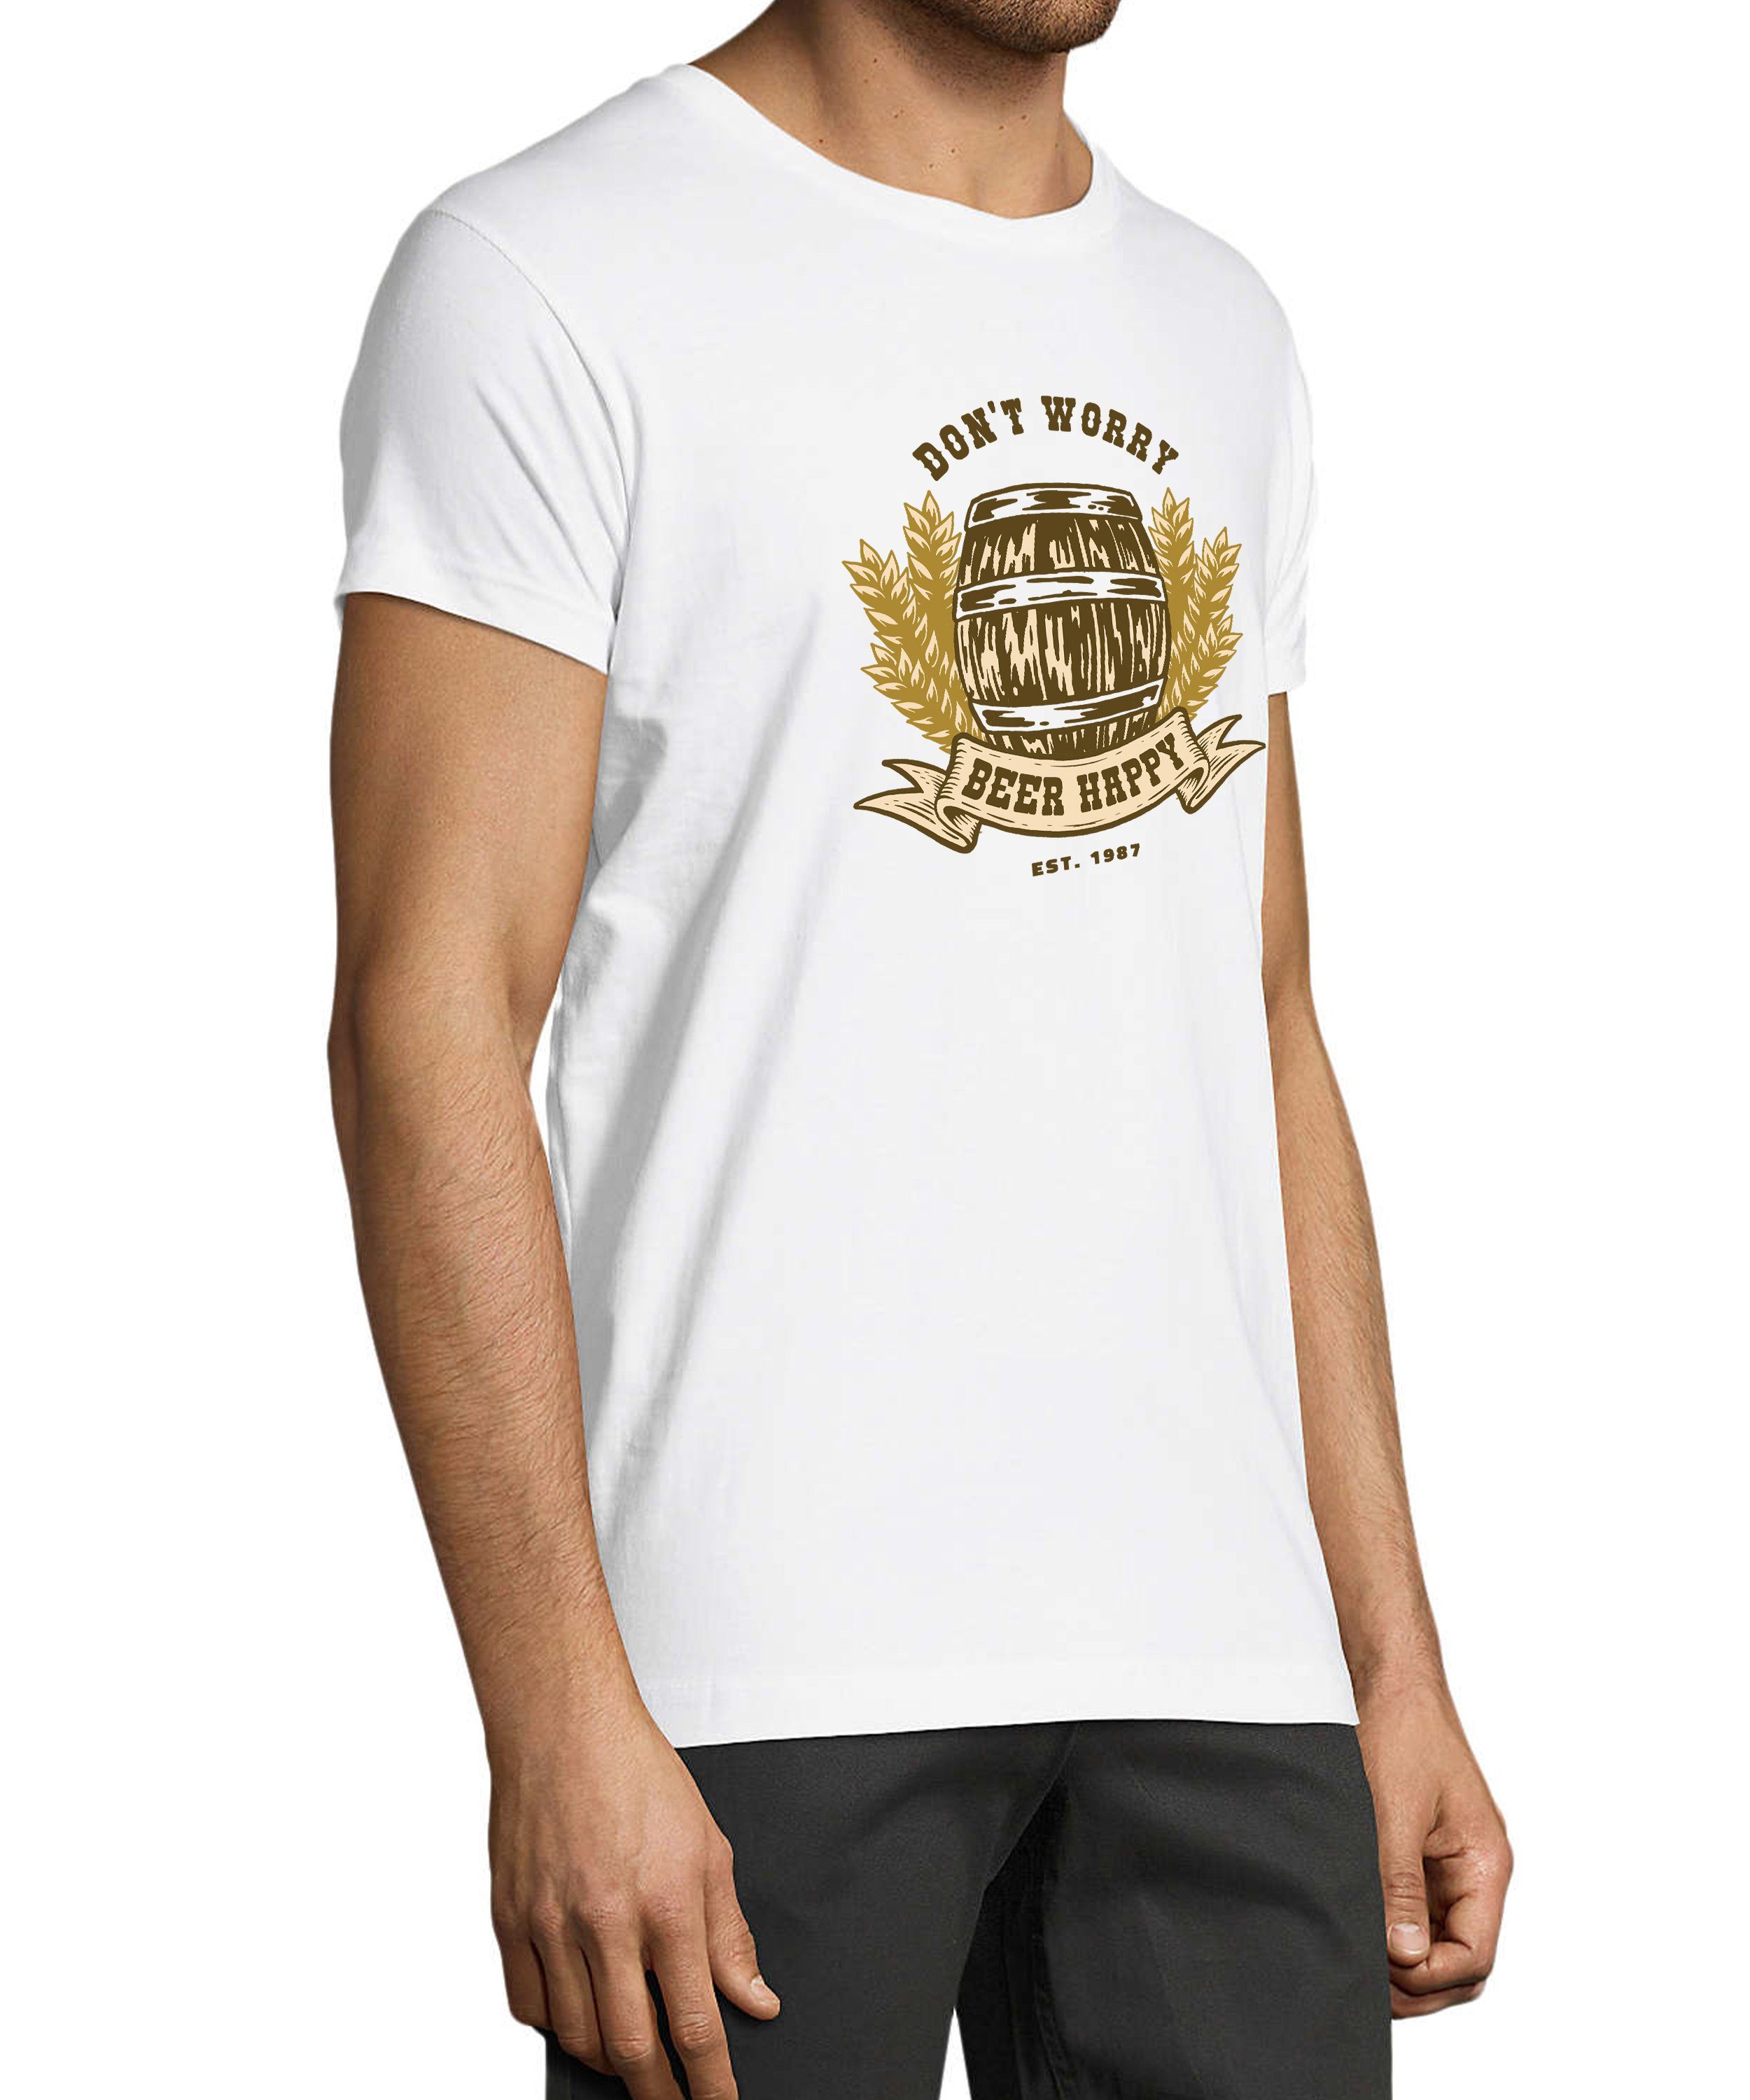 MyDesign24 T-Shirt Herren Oktoberfest Shirt mit - Regular Spruch Fit, mit Aufdruck Bierfass print Baumwollshirt weiss i301